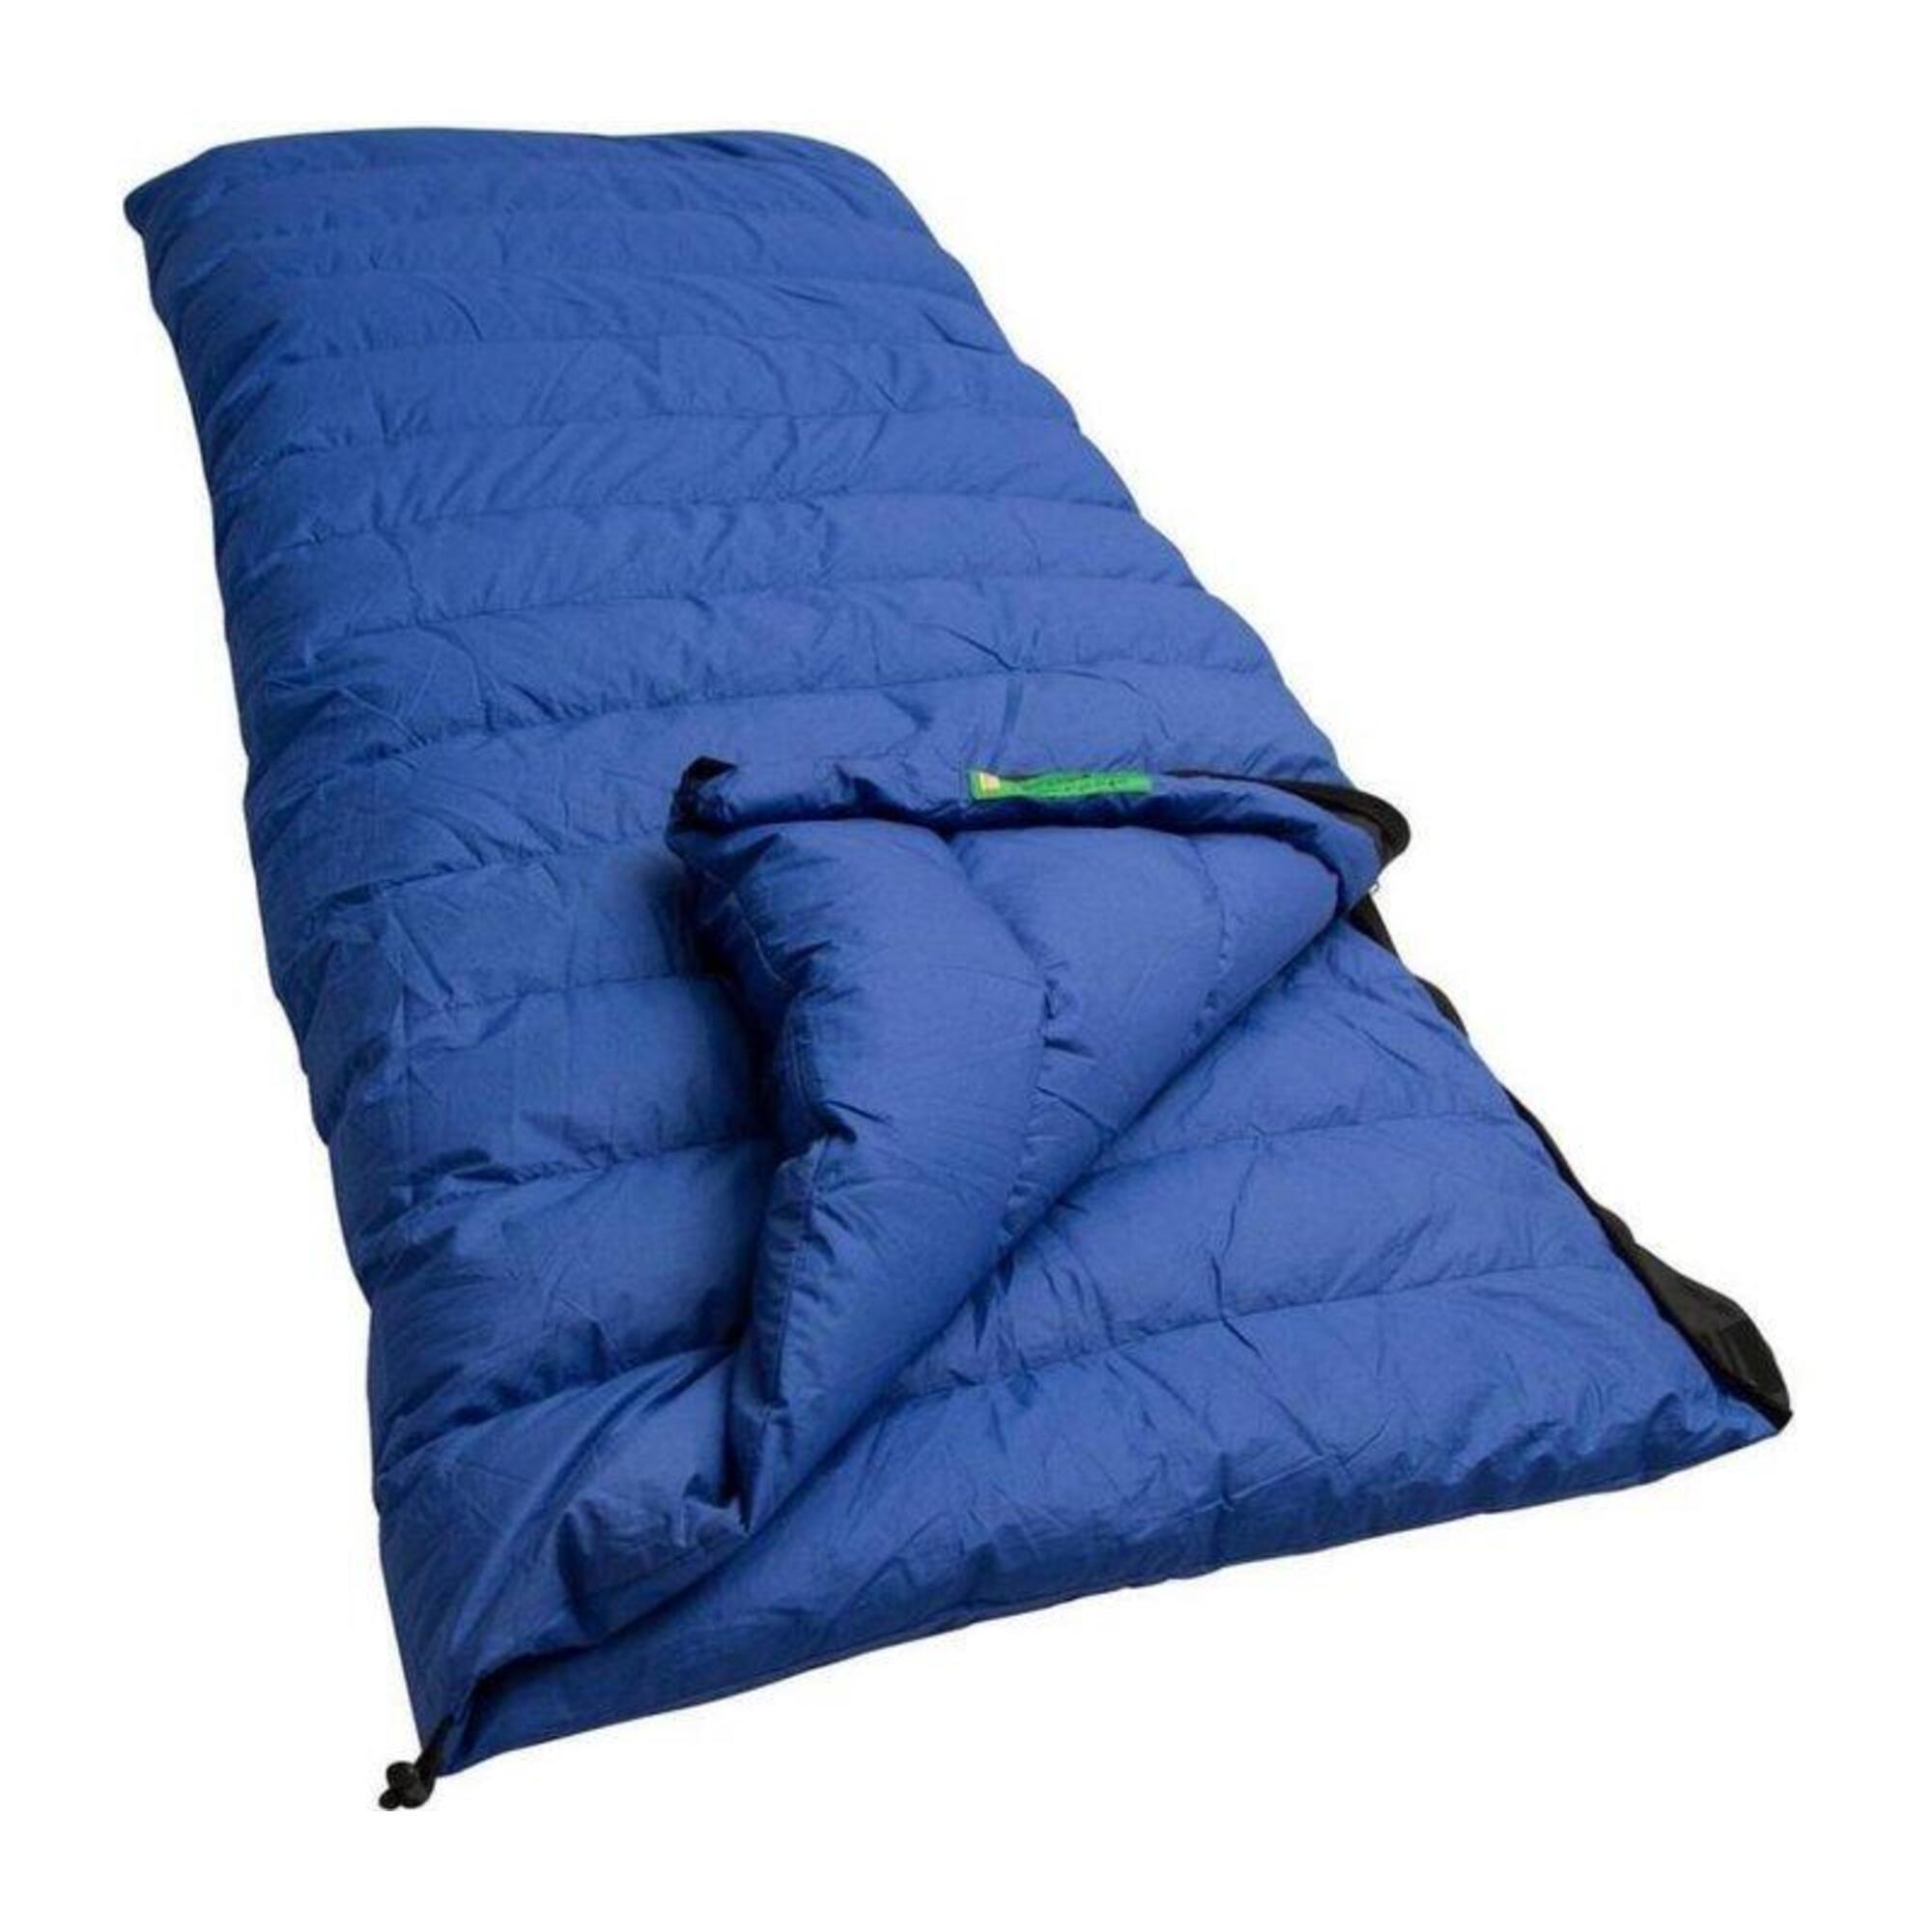 Спальный мешок Lowland Companion CC 1 с пуховым одеялом, синий детский спальный мешок grow up dreamer jack wolfskin синий